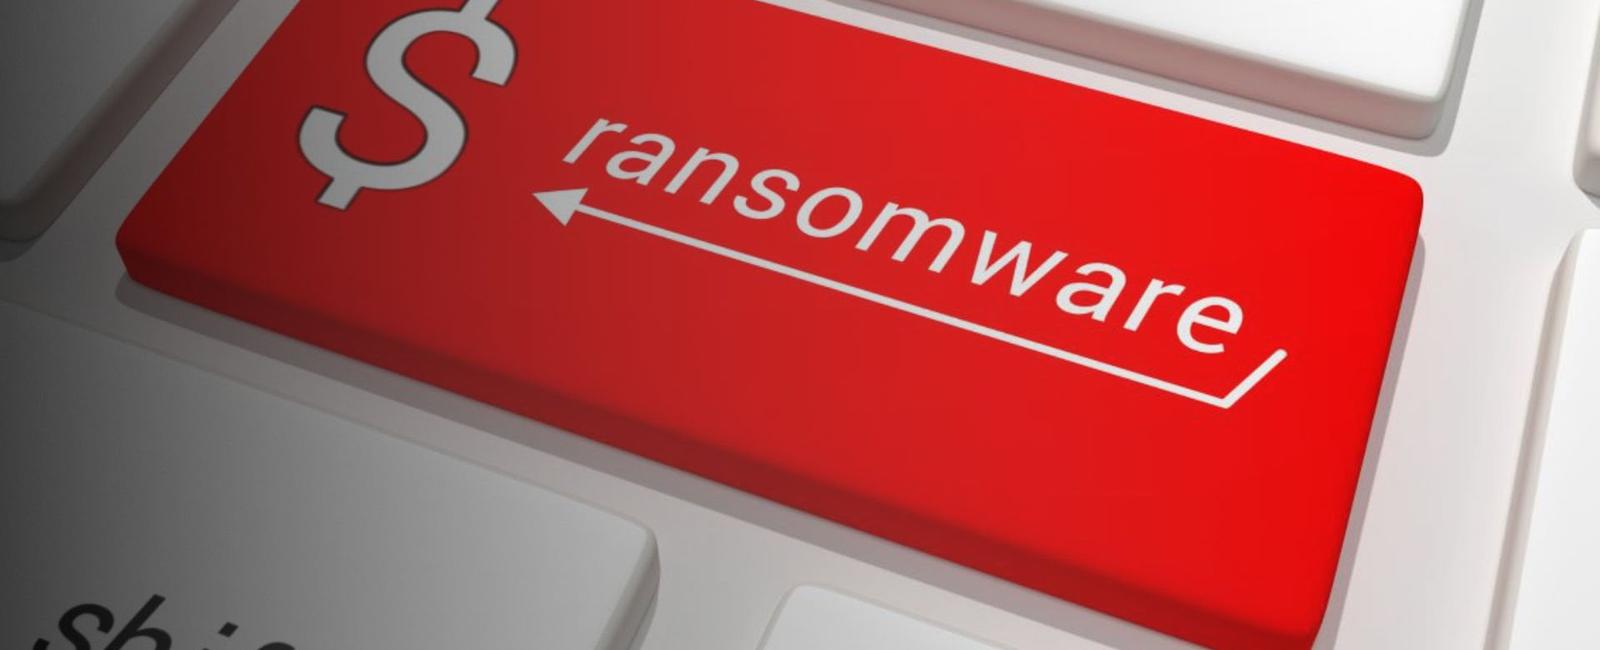 Ransomware: Países con mayor cantidad de detecciones